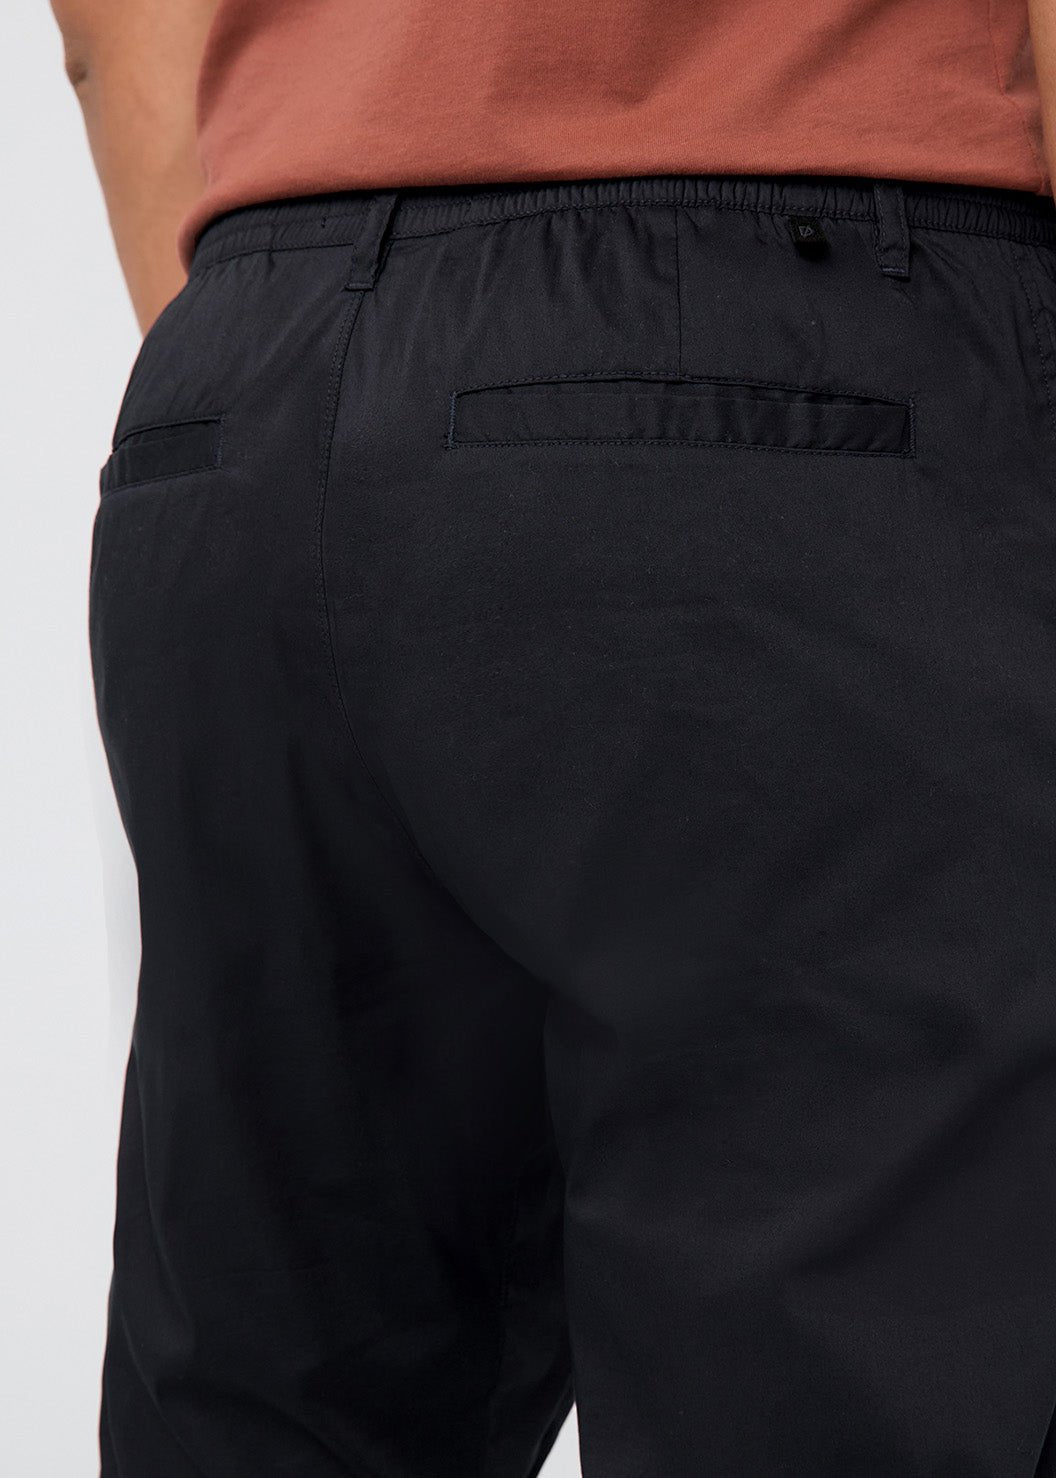 mens black lightweight summer travel pants back pocket